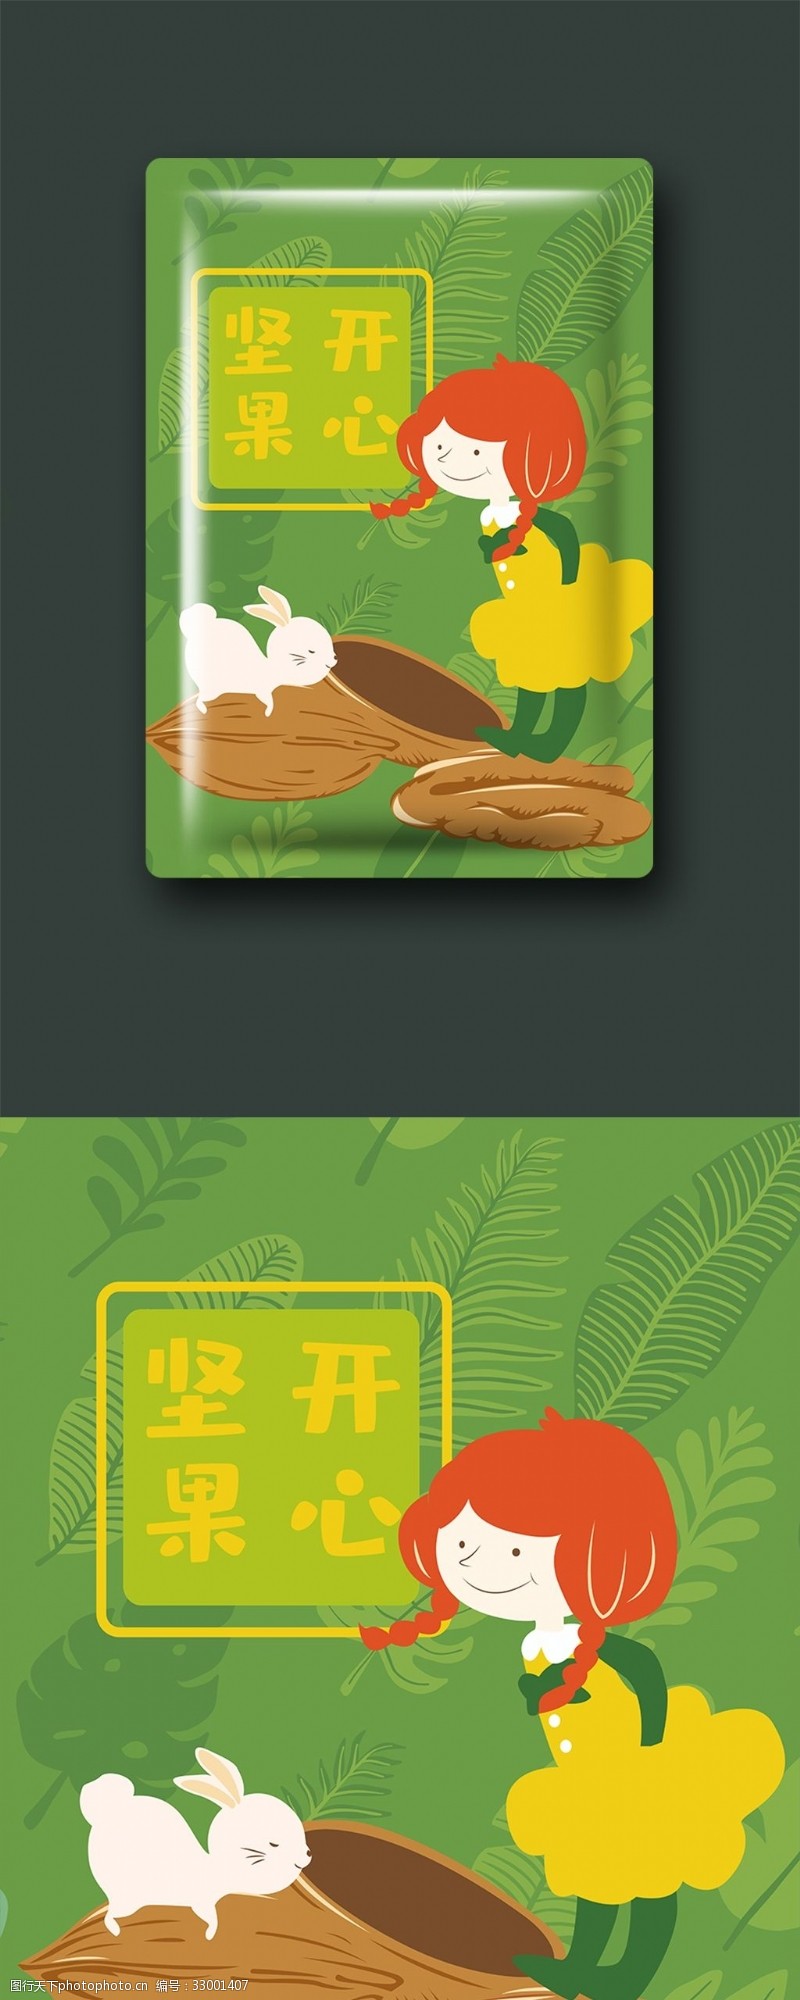 绿色小清新包装美味坚果食品包装设计可爱小女孩和兔子